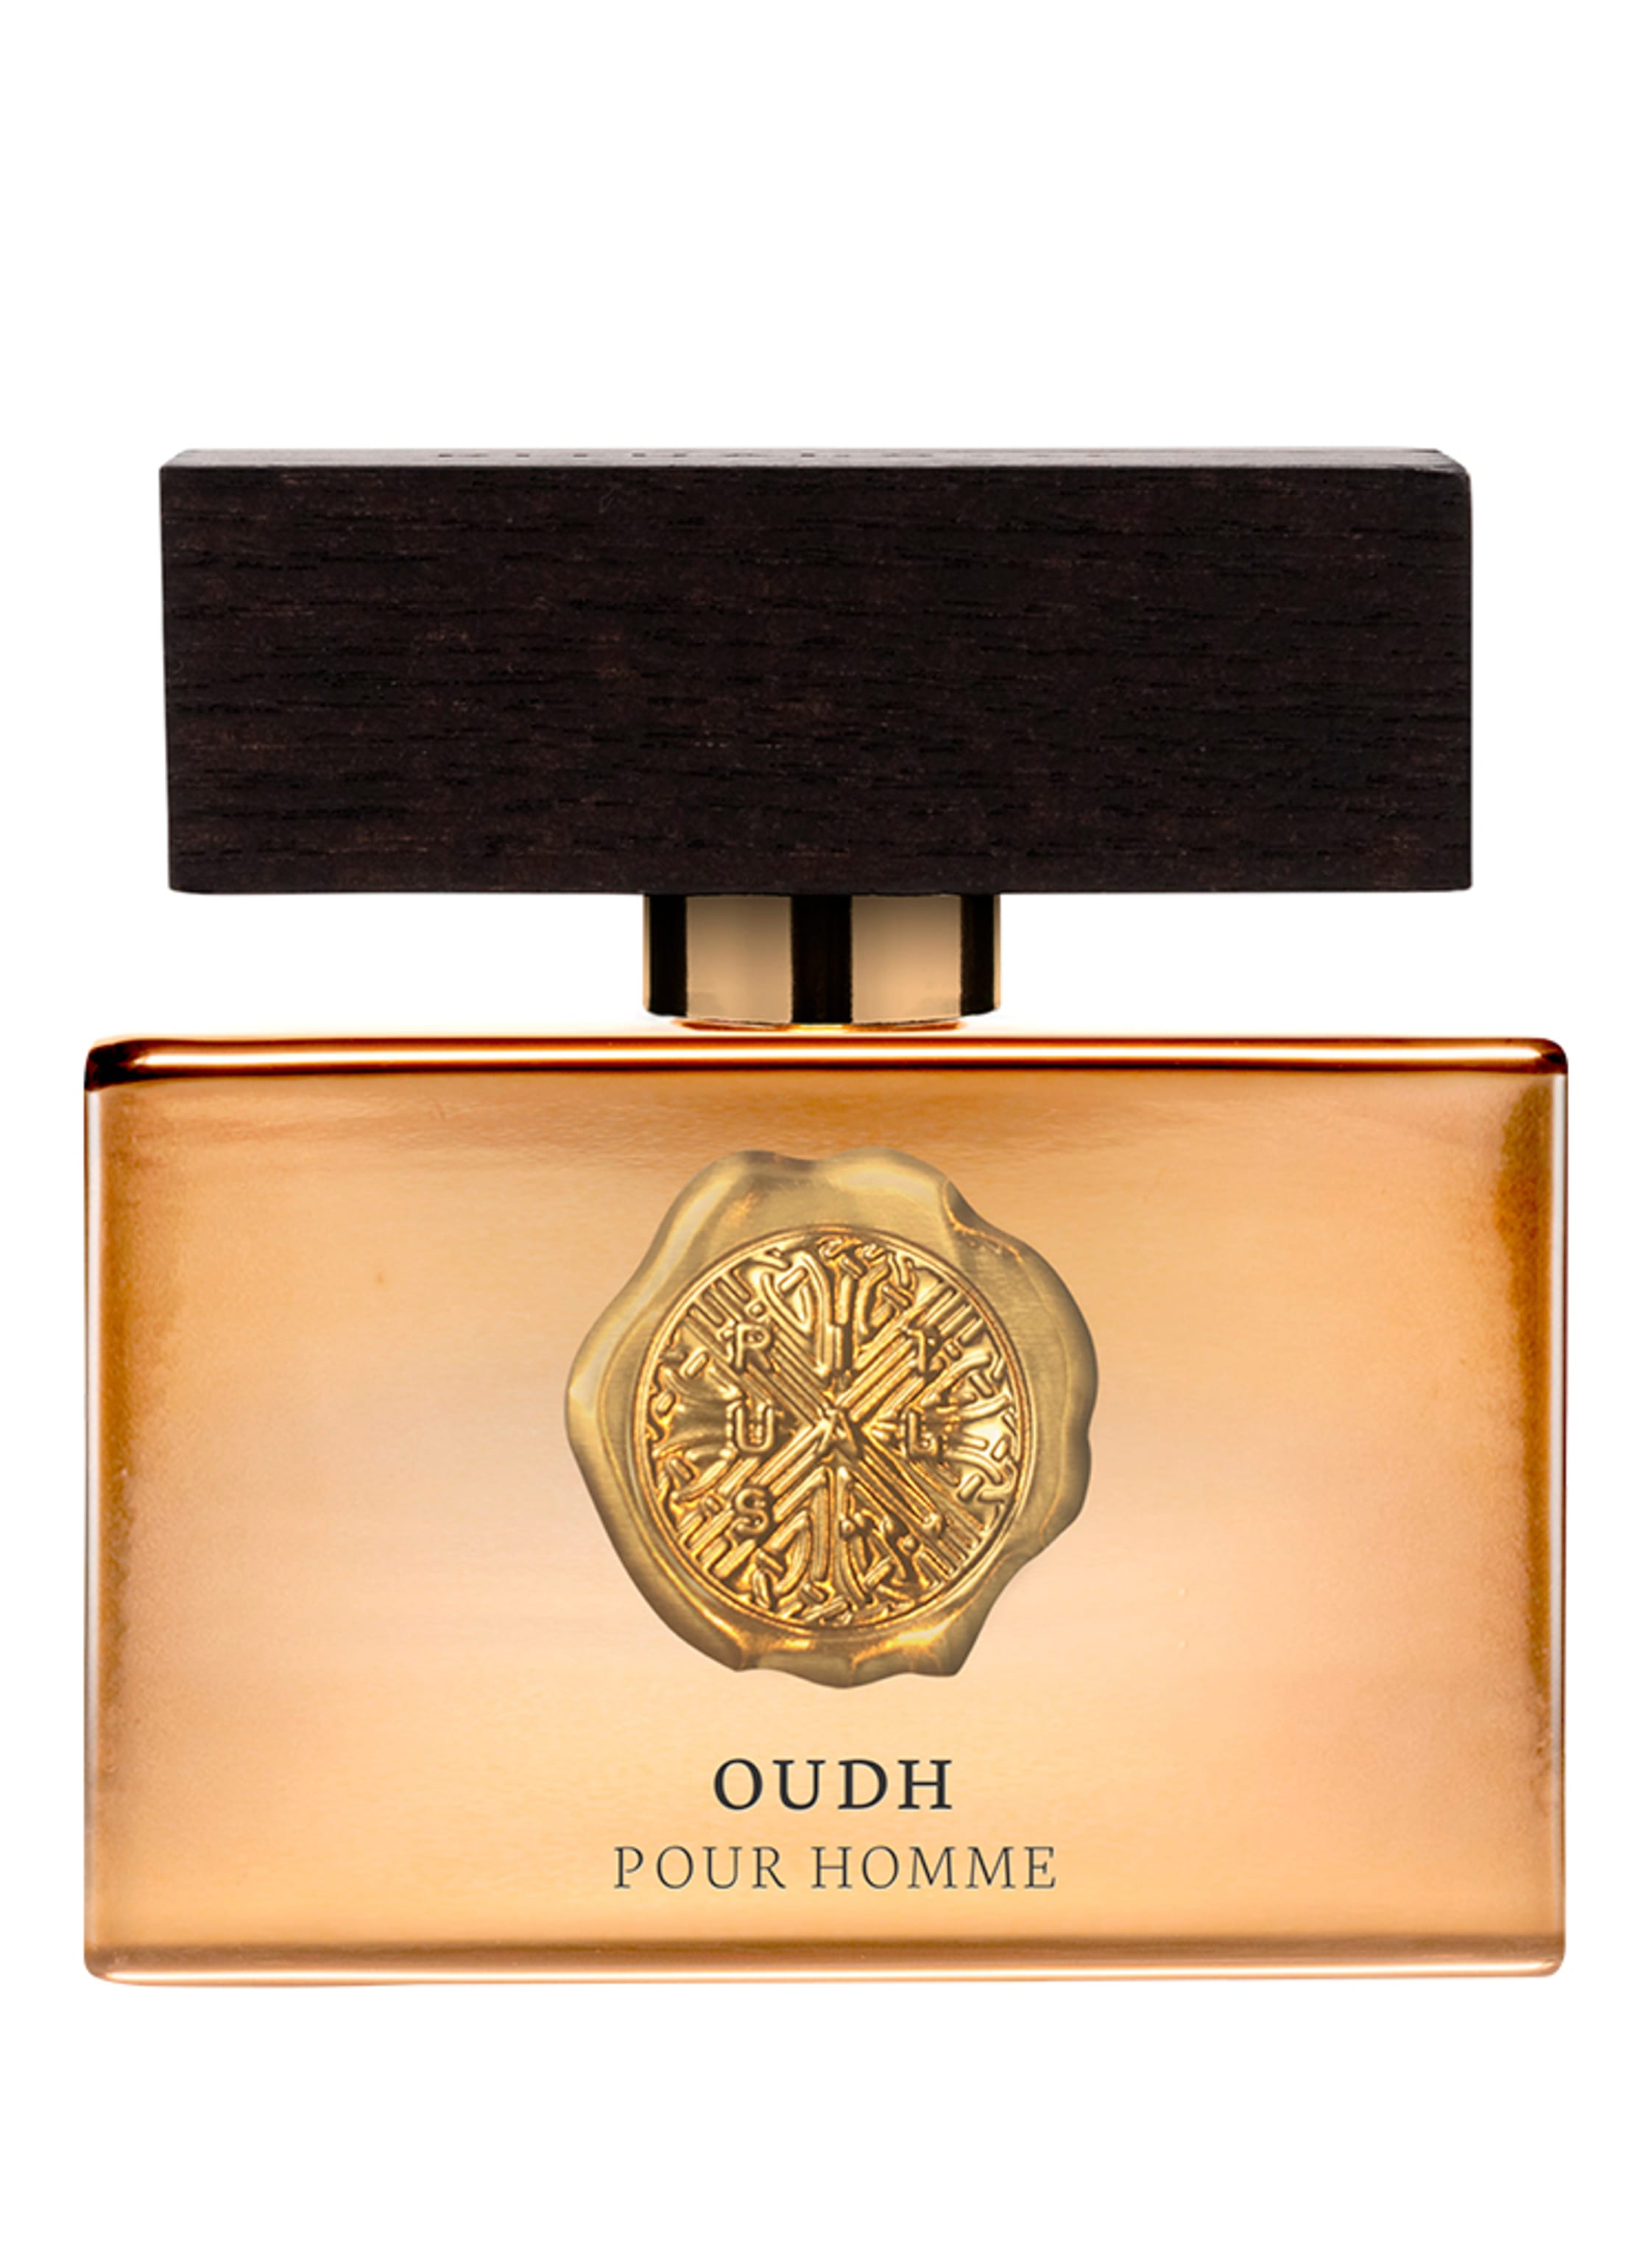 Rituals Parfum kaufen » bis zu -19% unter UVP